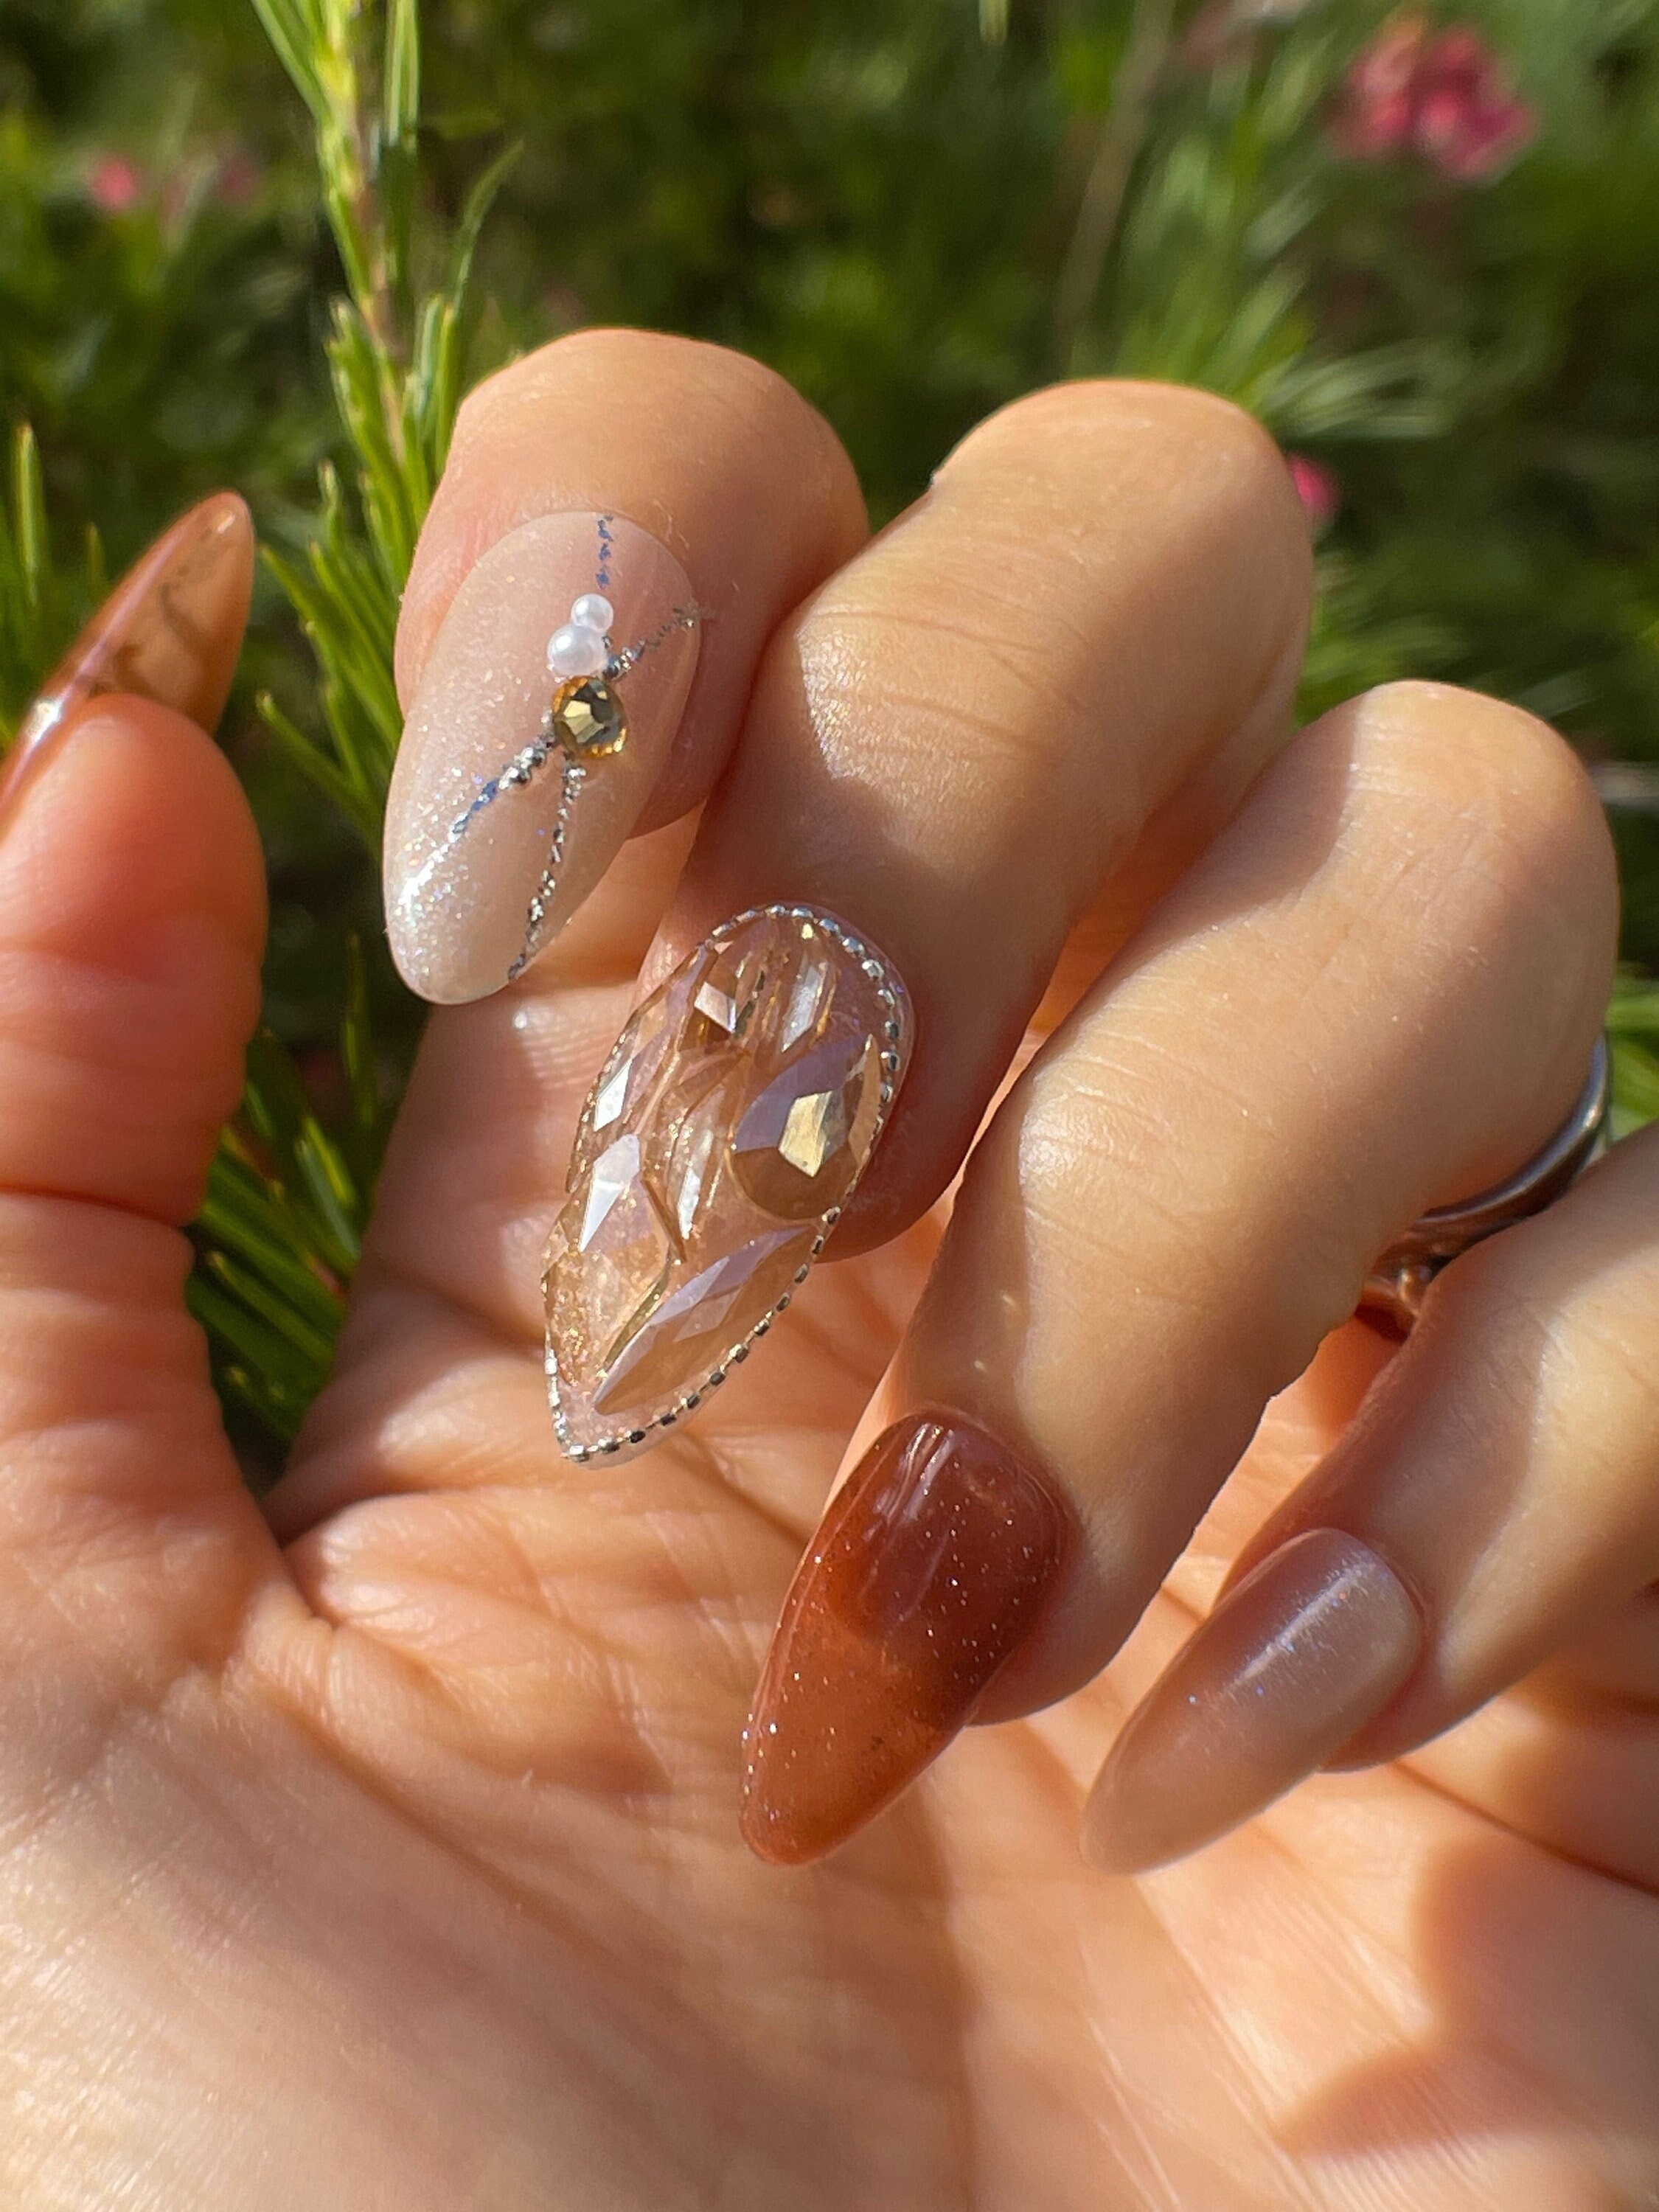 3D Nail Art Rose Rhinestones Jewelry Gems Mix Decoration Glitter Nails Tools  DIY 